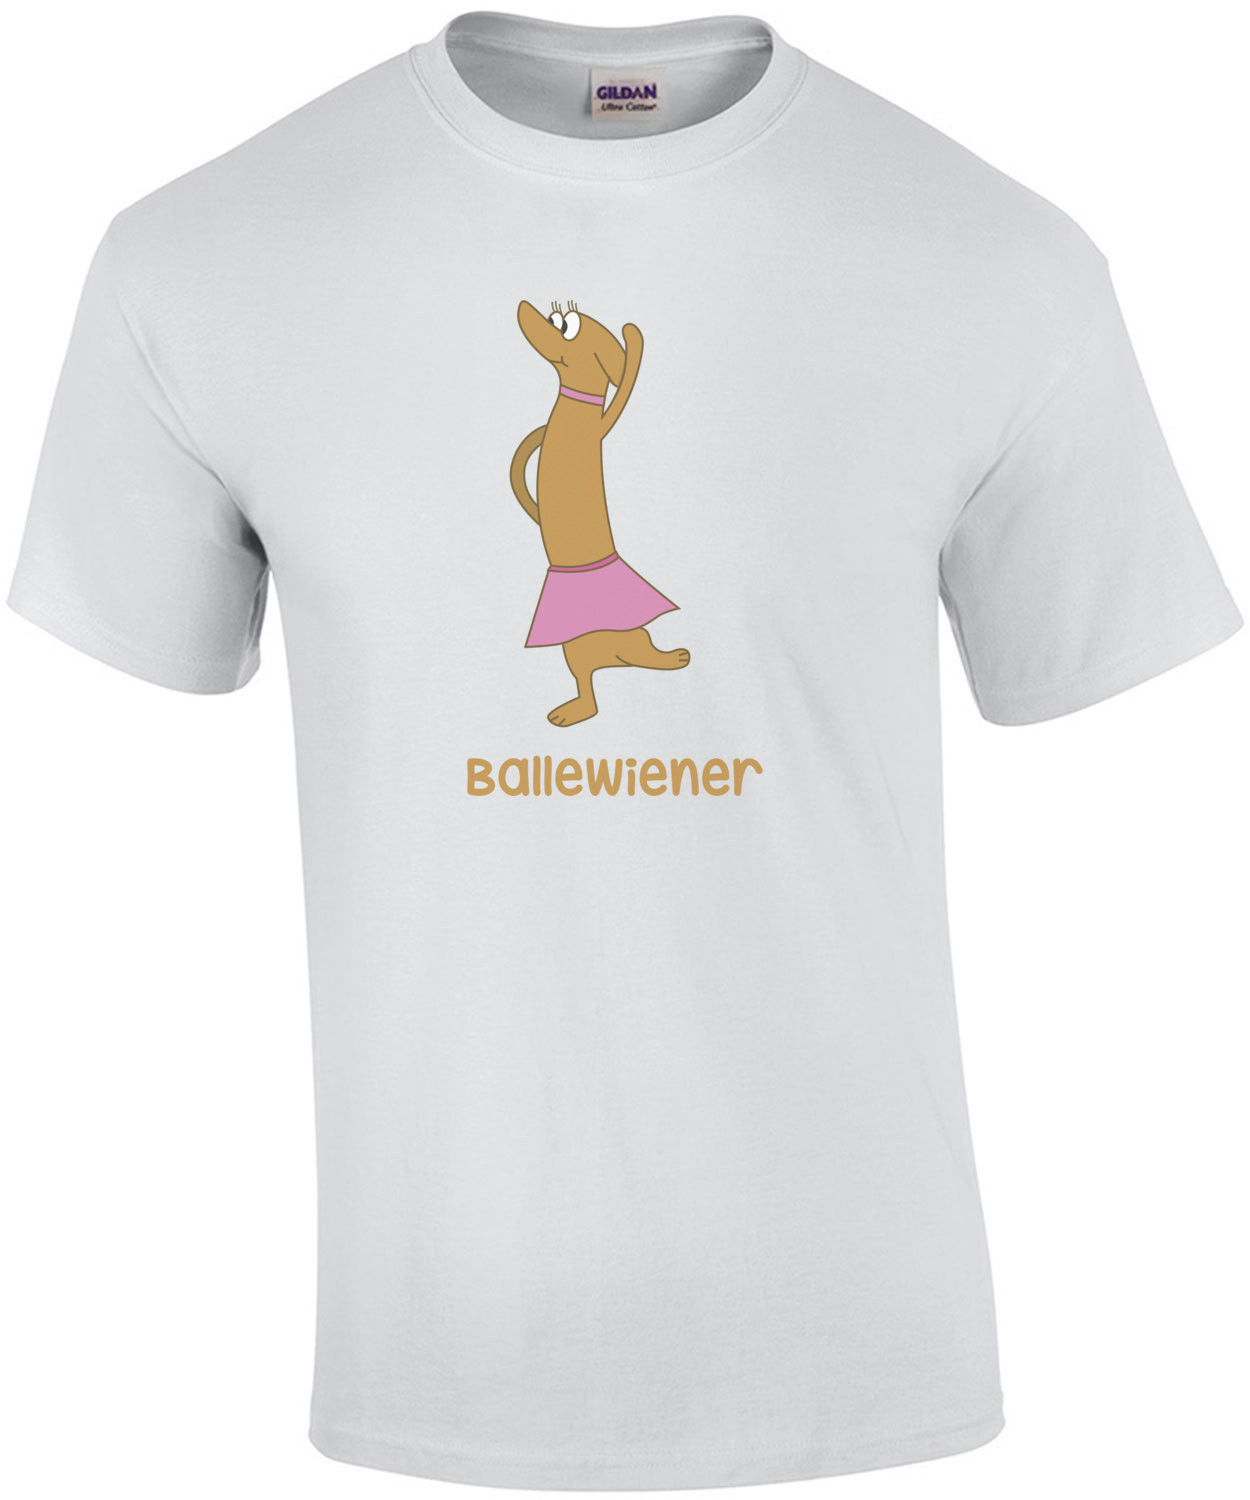 Ballewiener - Dachshund / Wiener Dog / Wiener / Weenie Dog / Weenie T-Shirt